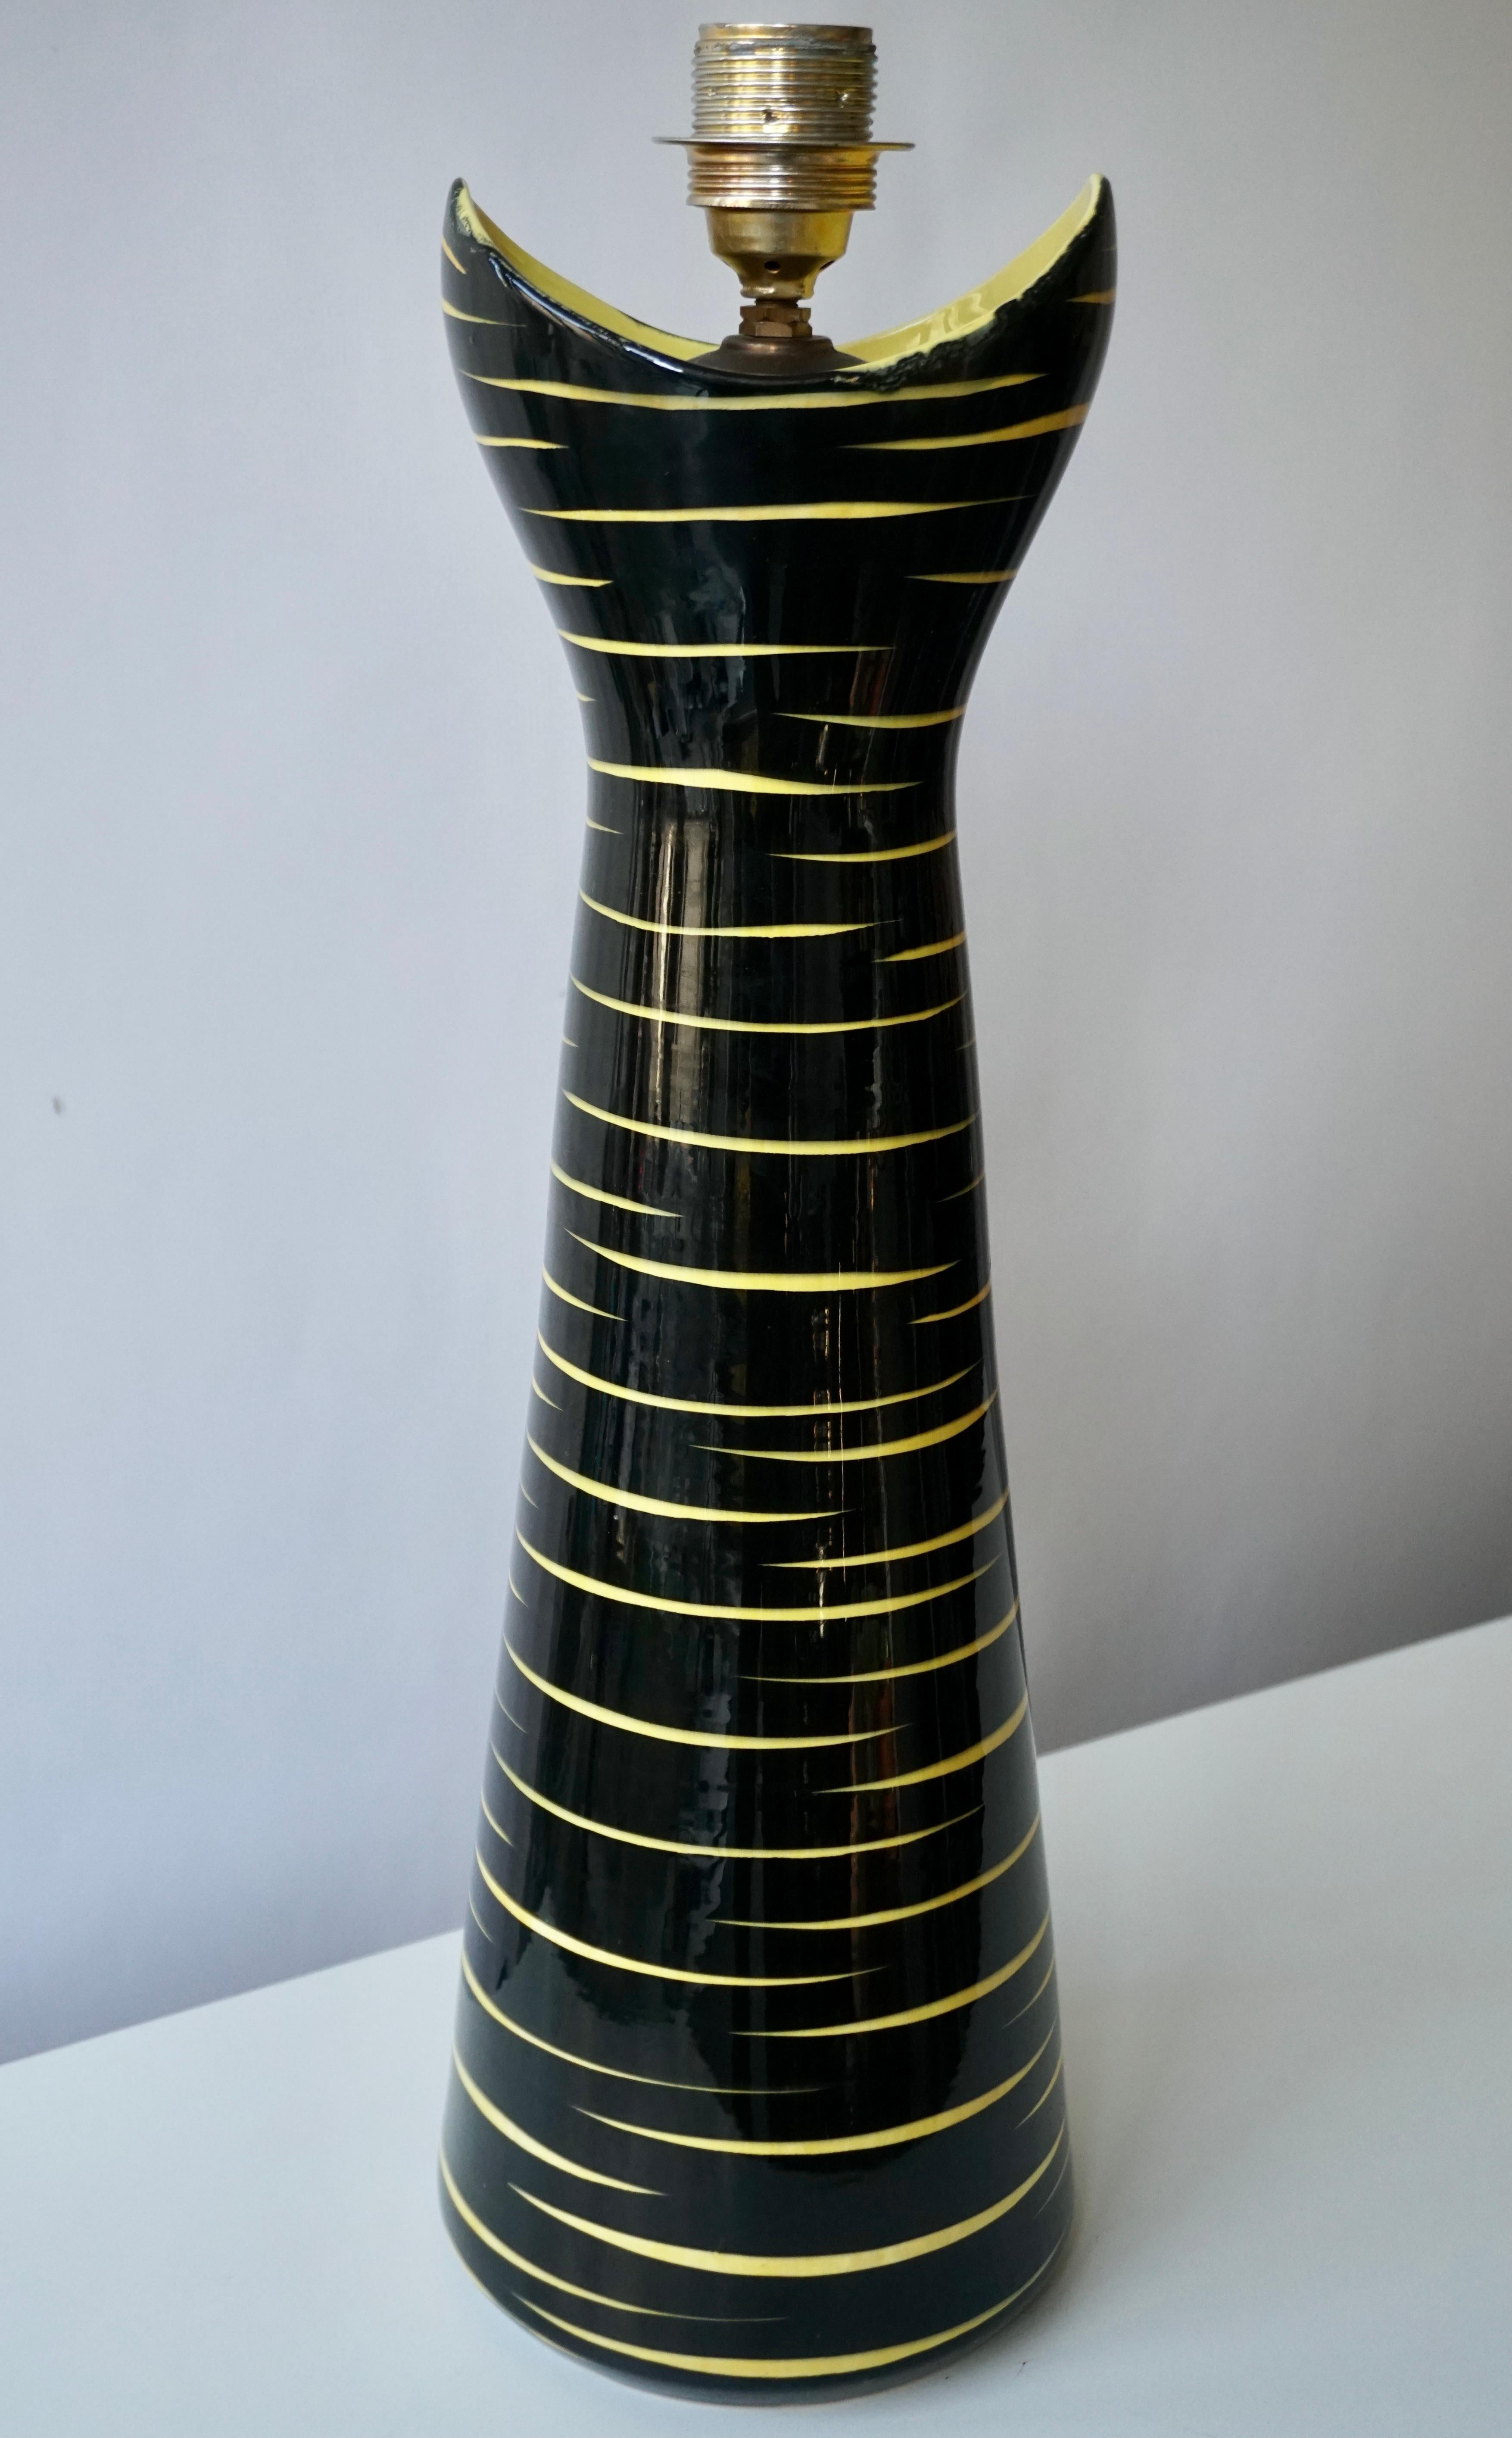 Super cool signiert schwarz und gelb Keramik Tischlampe, glasierte Oberfläche, 21 Zoll bis zur Spitze der Fassung,
Deutschland, 1950er Jahre.
Basemark: SMF Schramberg
Brasilien Dez.
   